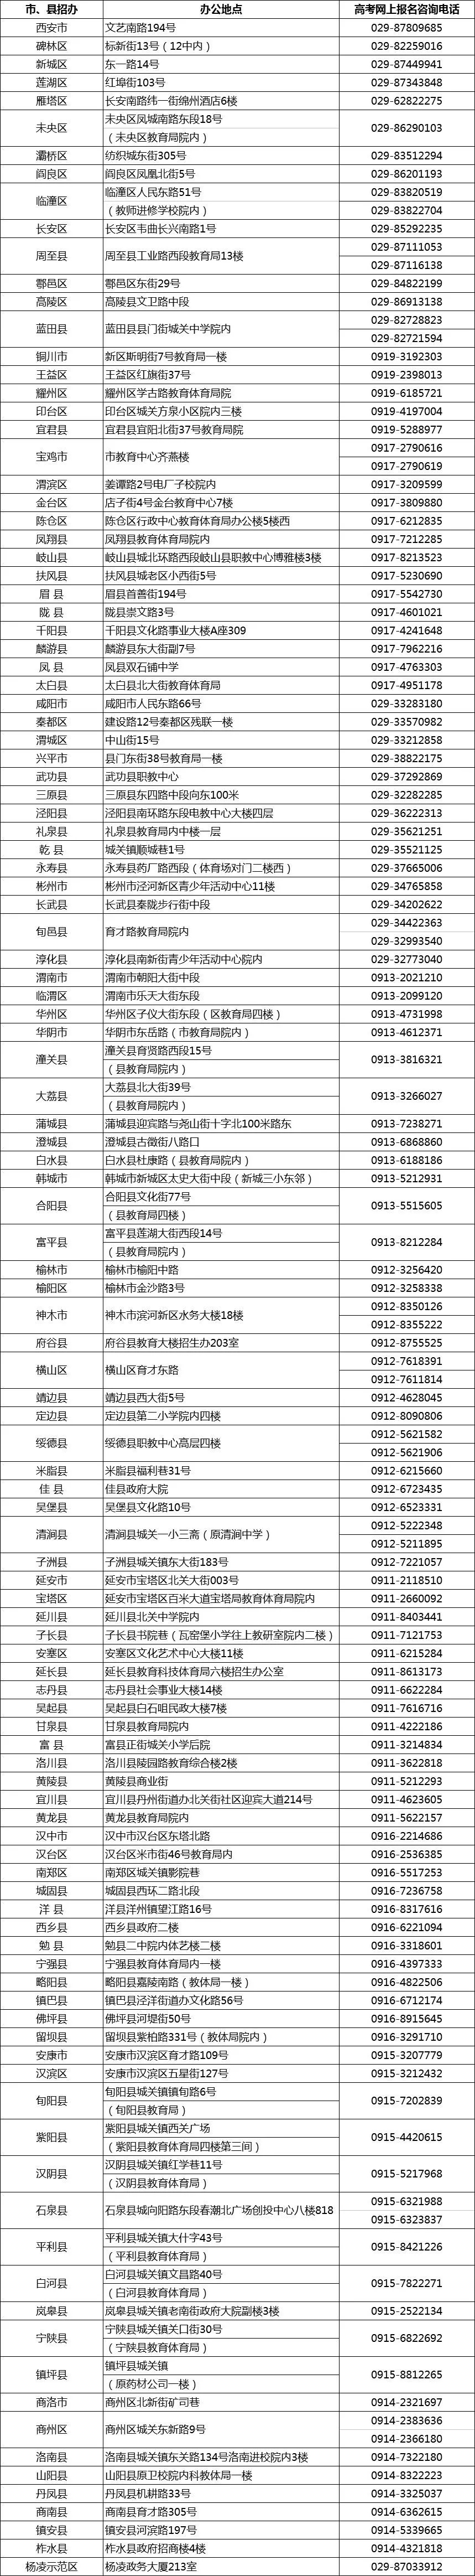 2019年陕西省高考报名各区县招生办联系方式